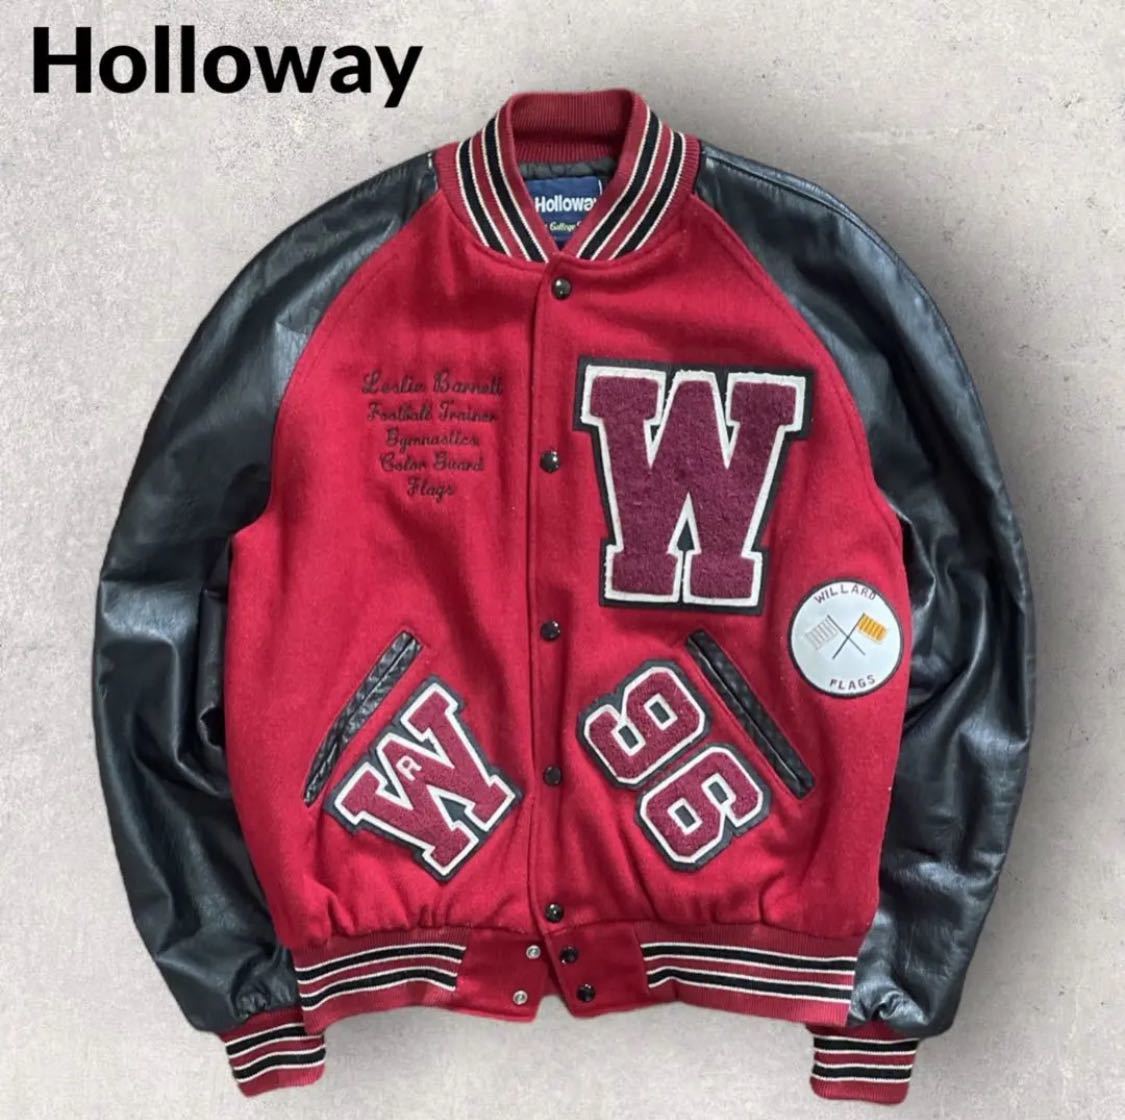 返品不可】 Holloway 赤×黒 M レザースタジャン 袖革 セミデコ USA製